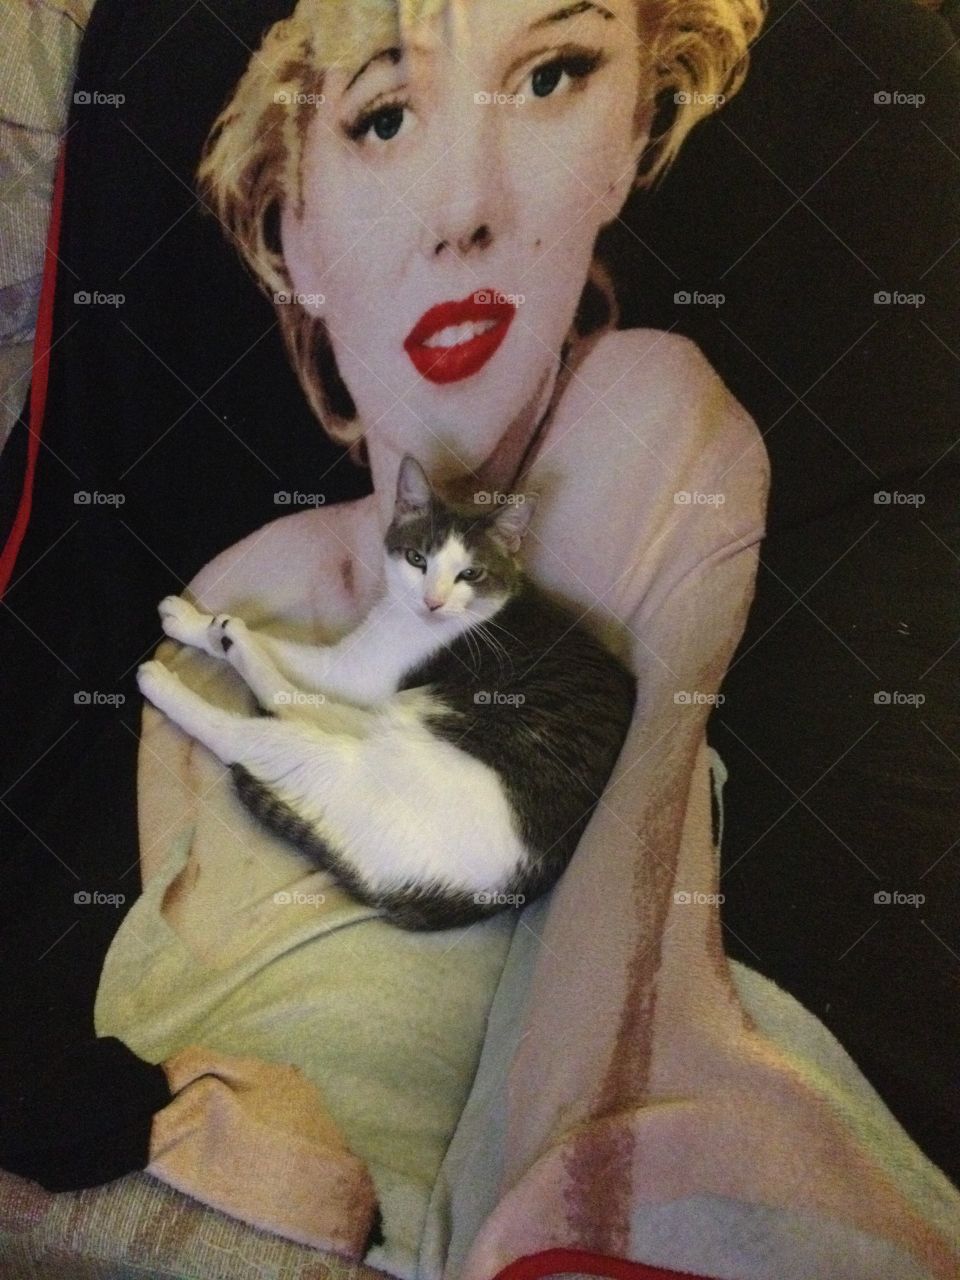 Cat sleeping on Marilyn Monroe blanket